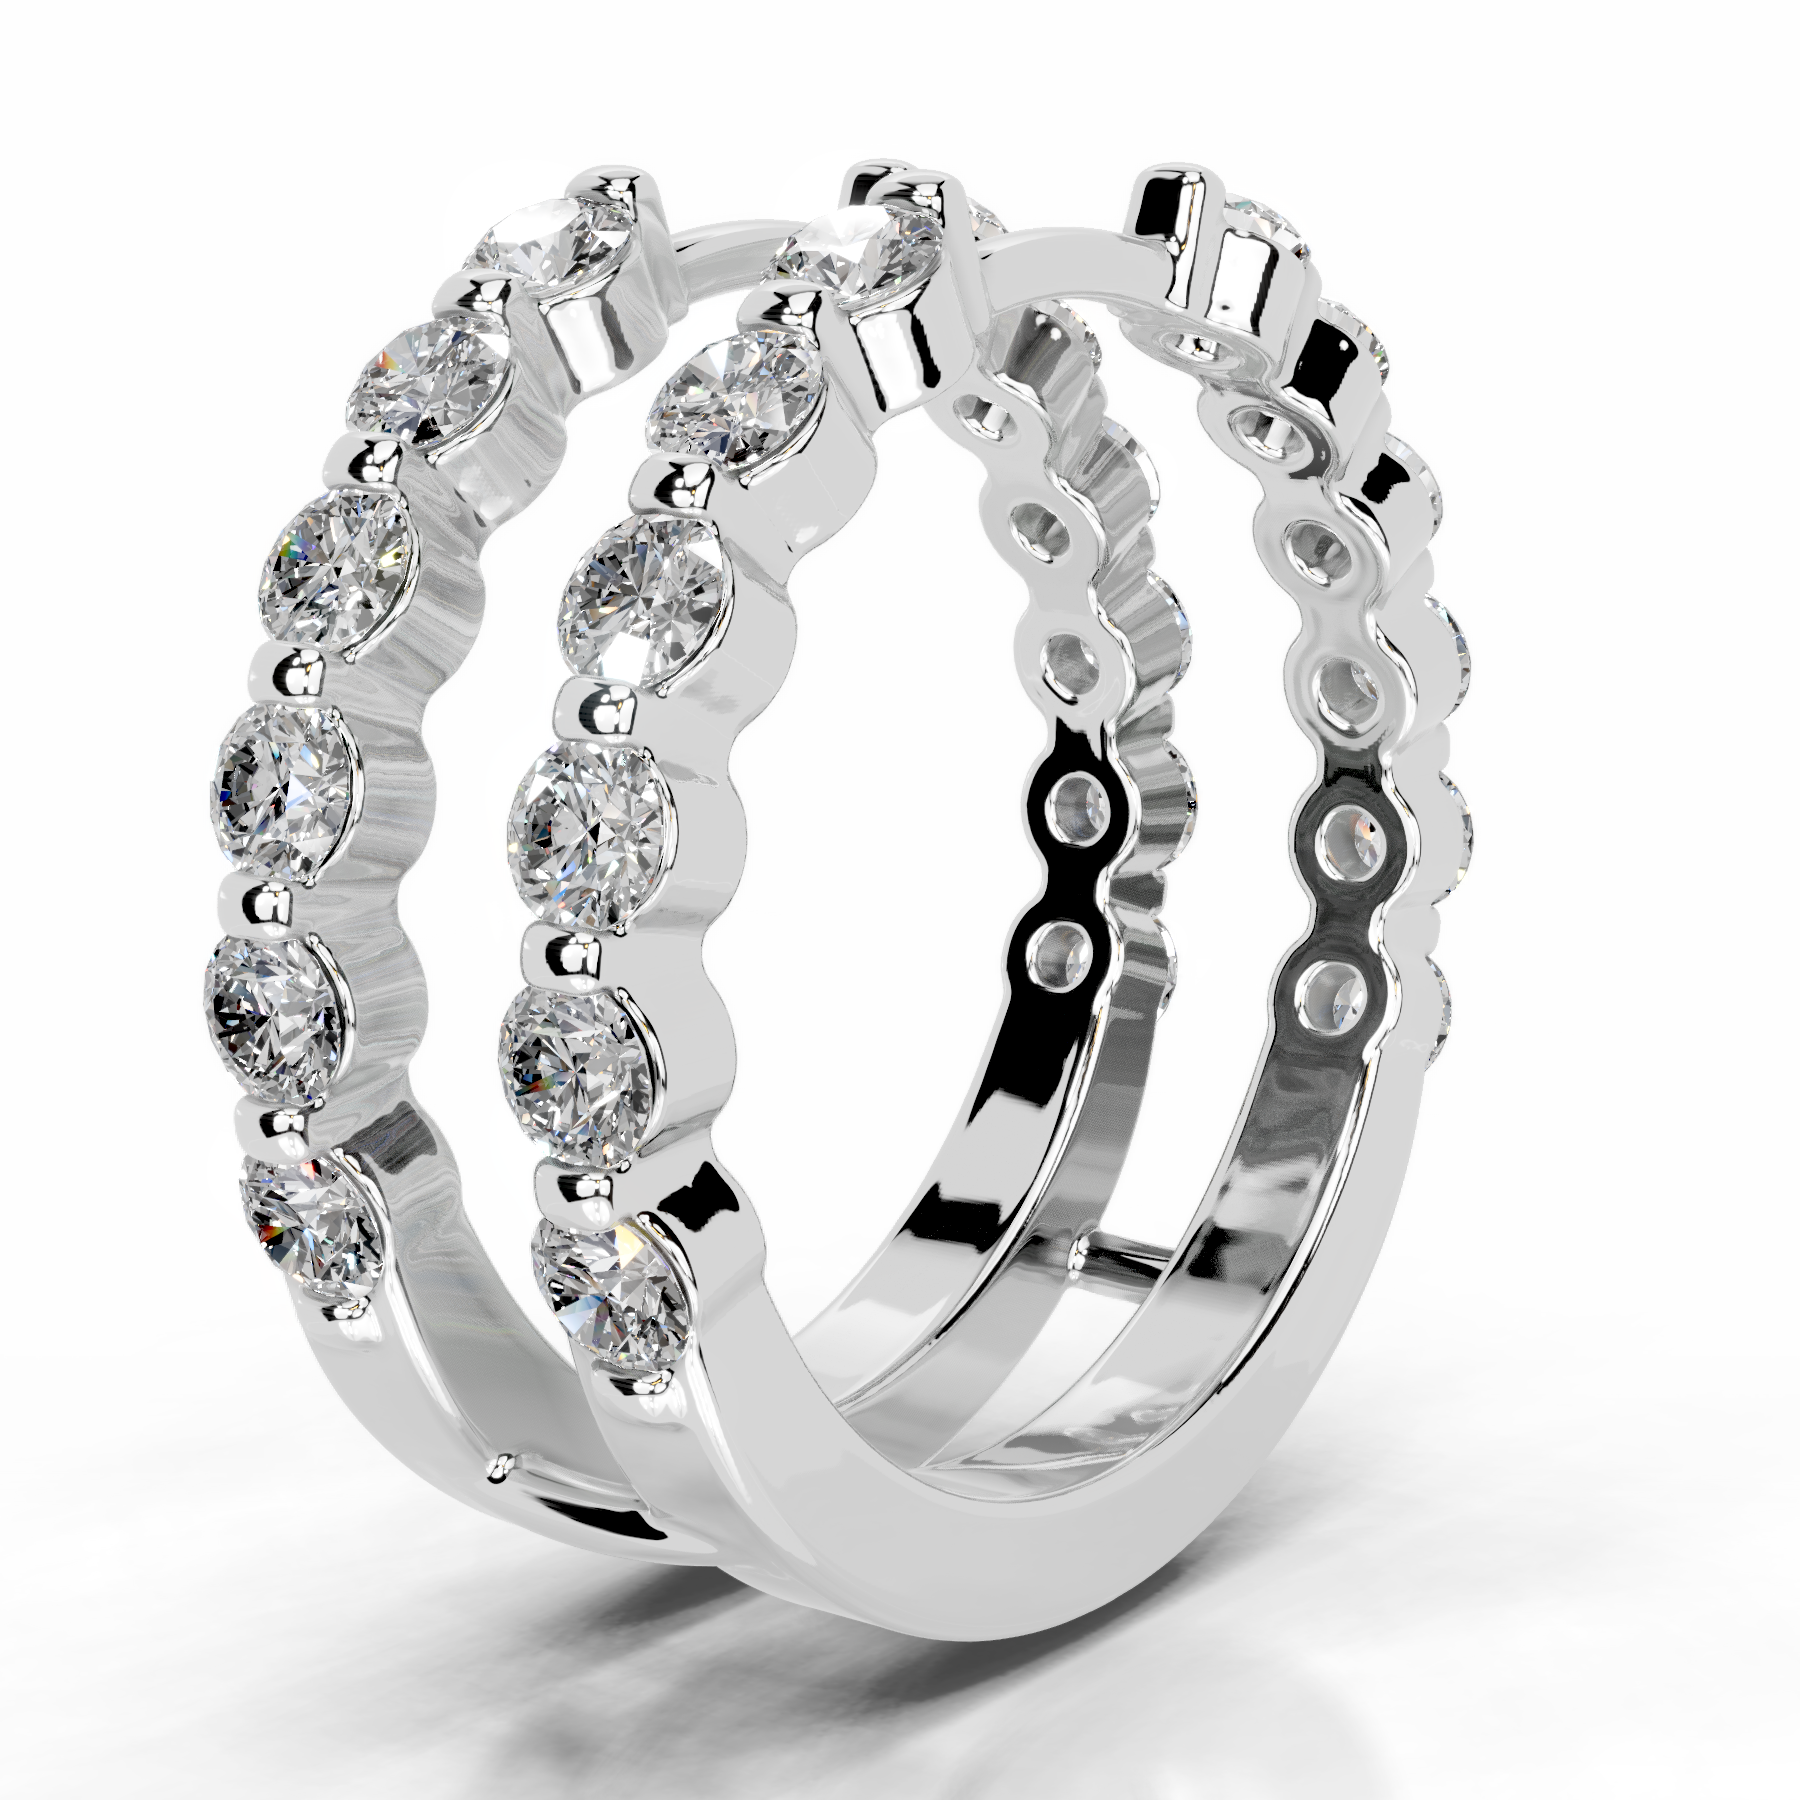 Ashley Lab Grown Diamond Wedding Ring   (1.25 Carat) -14K White Gold